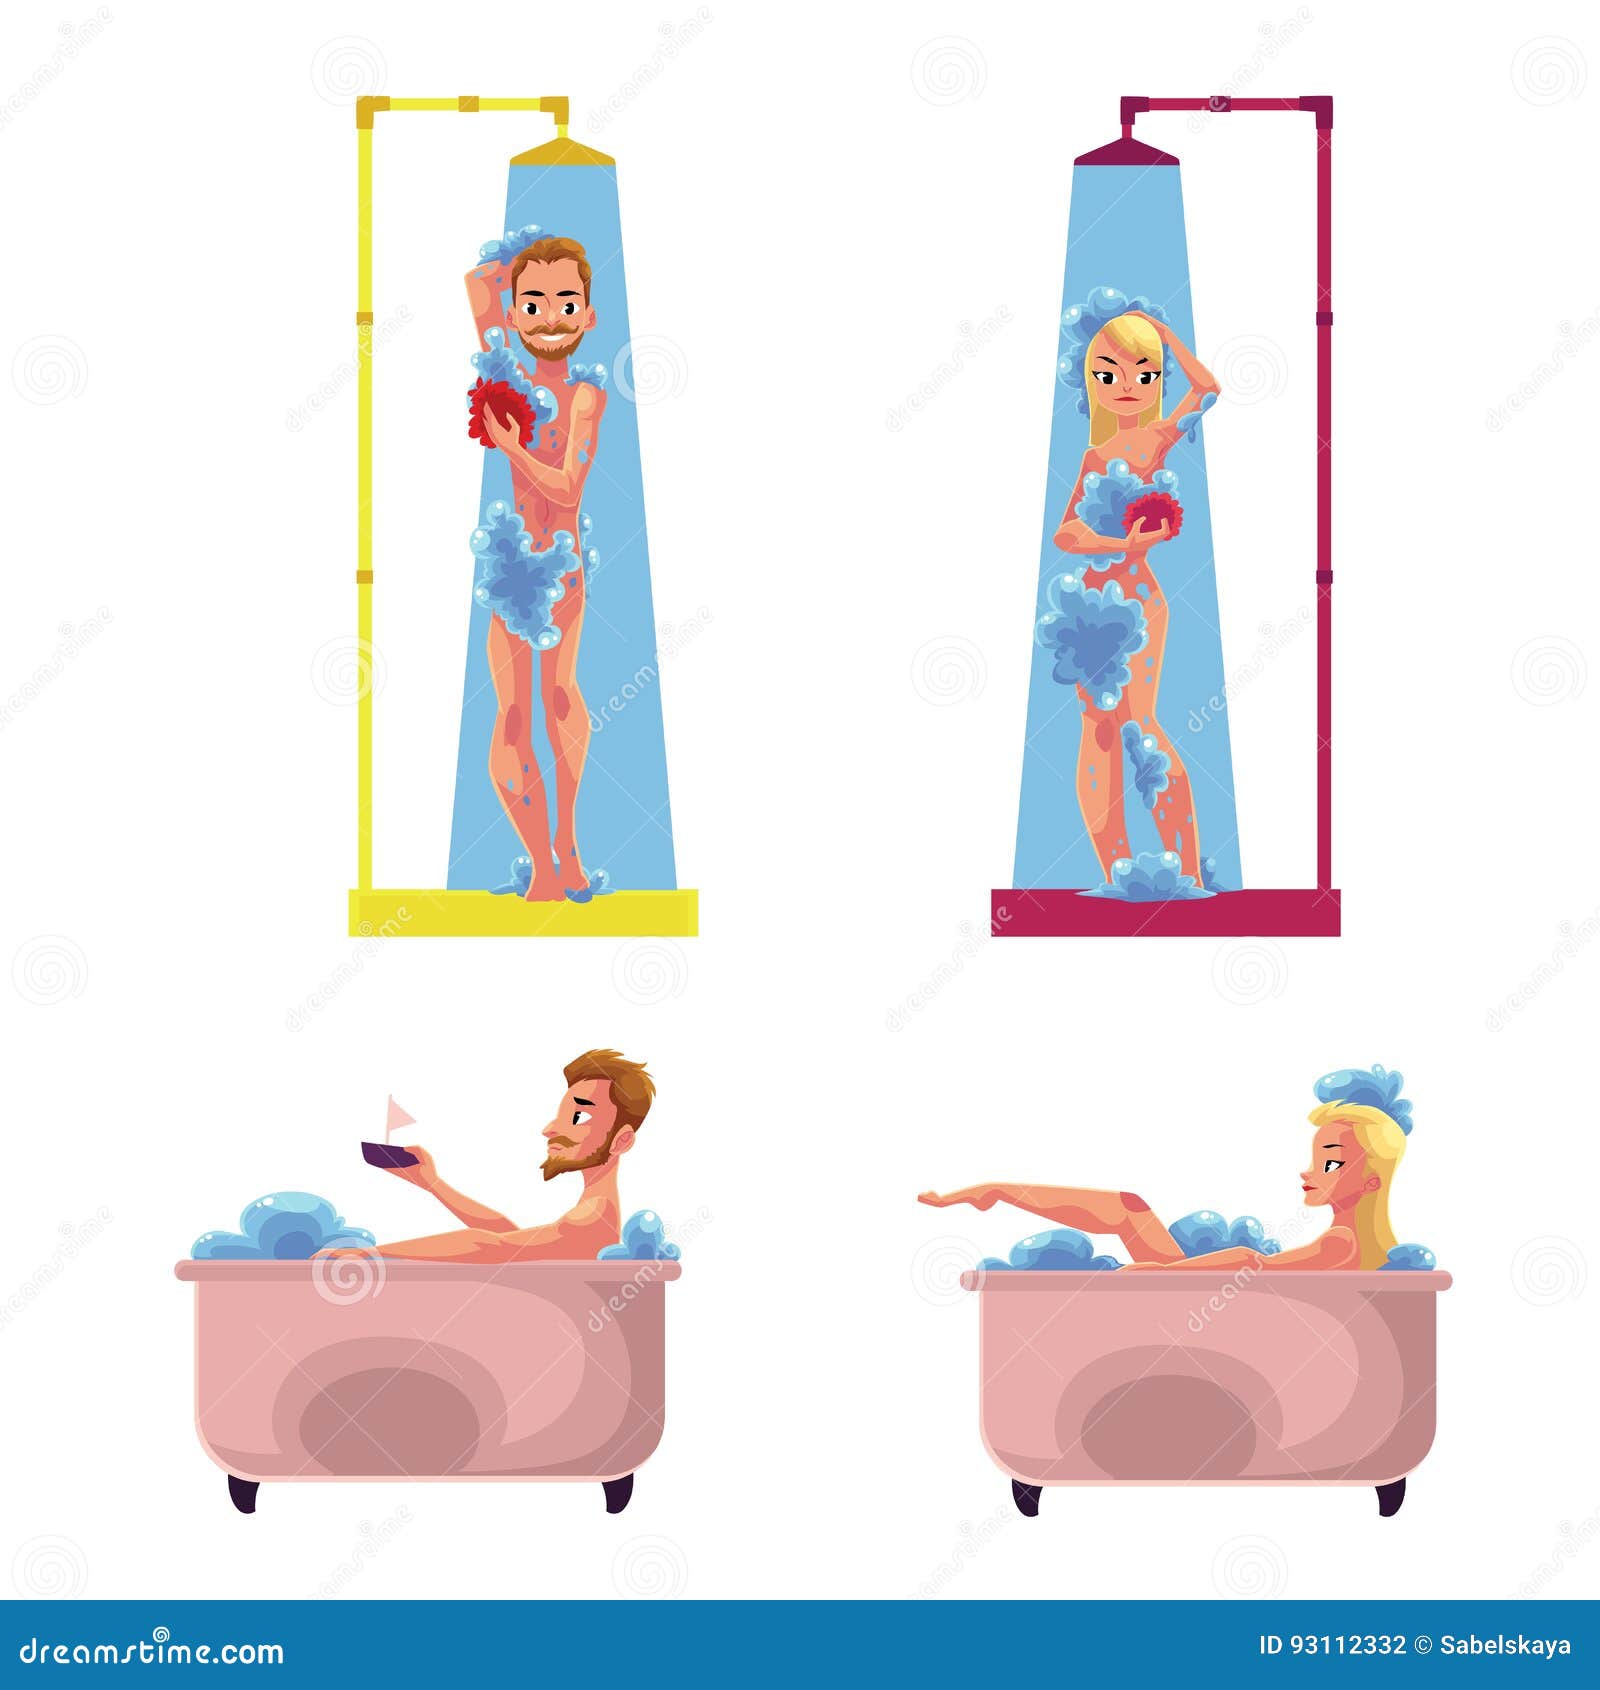 Man Woman Taking Shower Bath Washing Enjoying Bathing In Bathtub